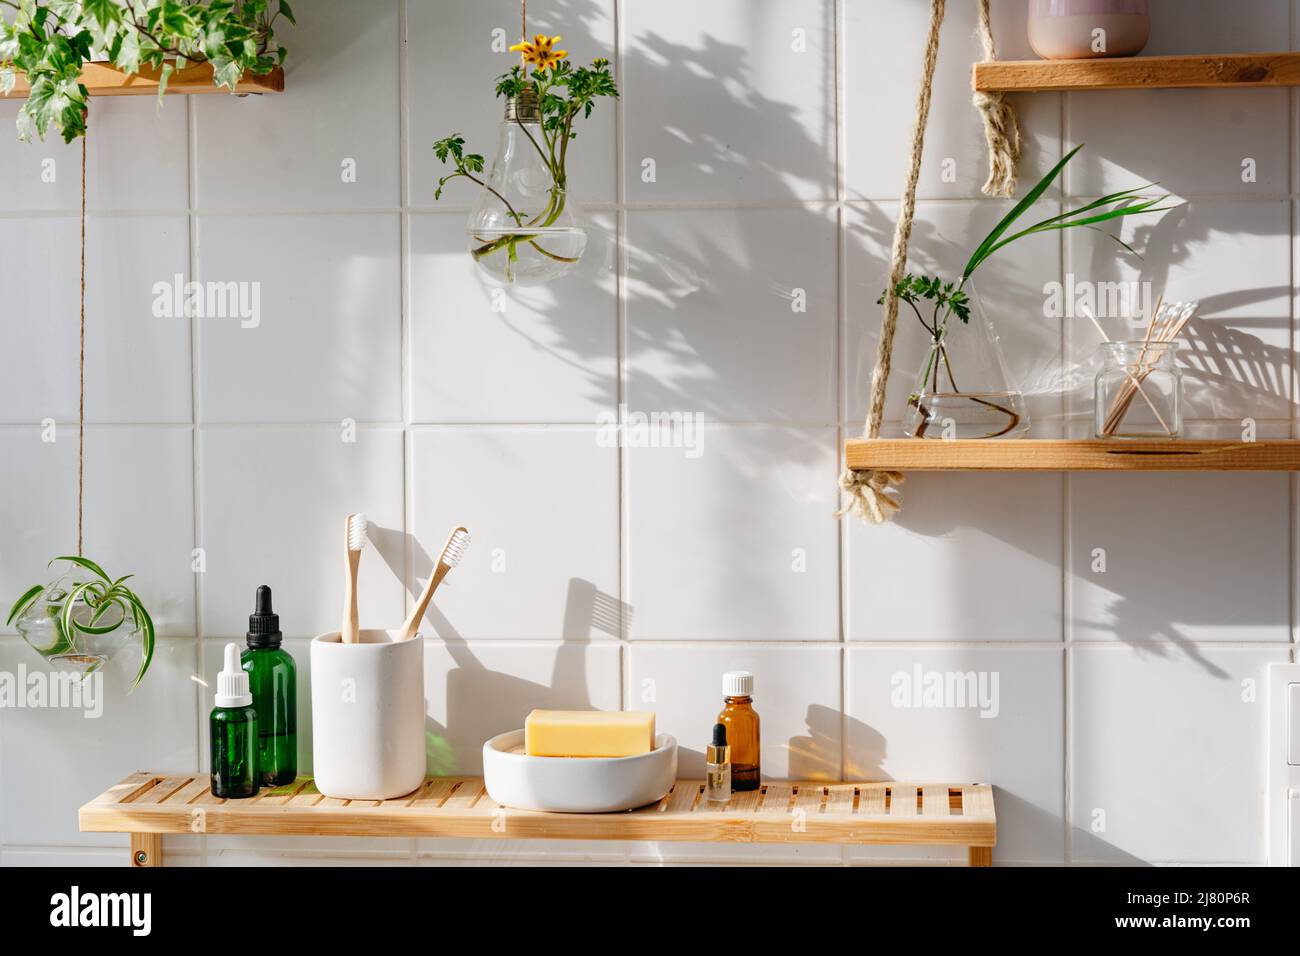 Ripiani in legno con cosmetici e prodotti da bagno contro pareti in piastrelle bianche con design bifilico. Pentole di vetro appese con piante verdi Foto Stock